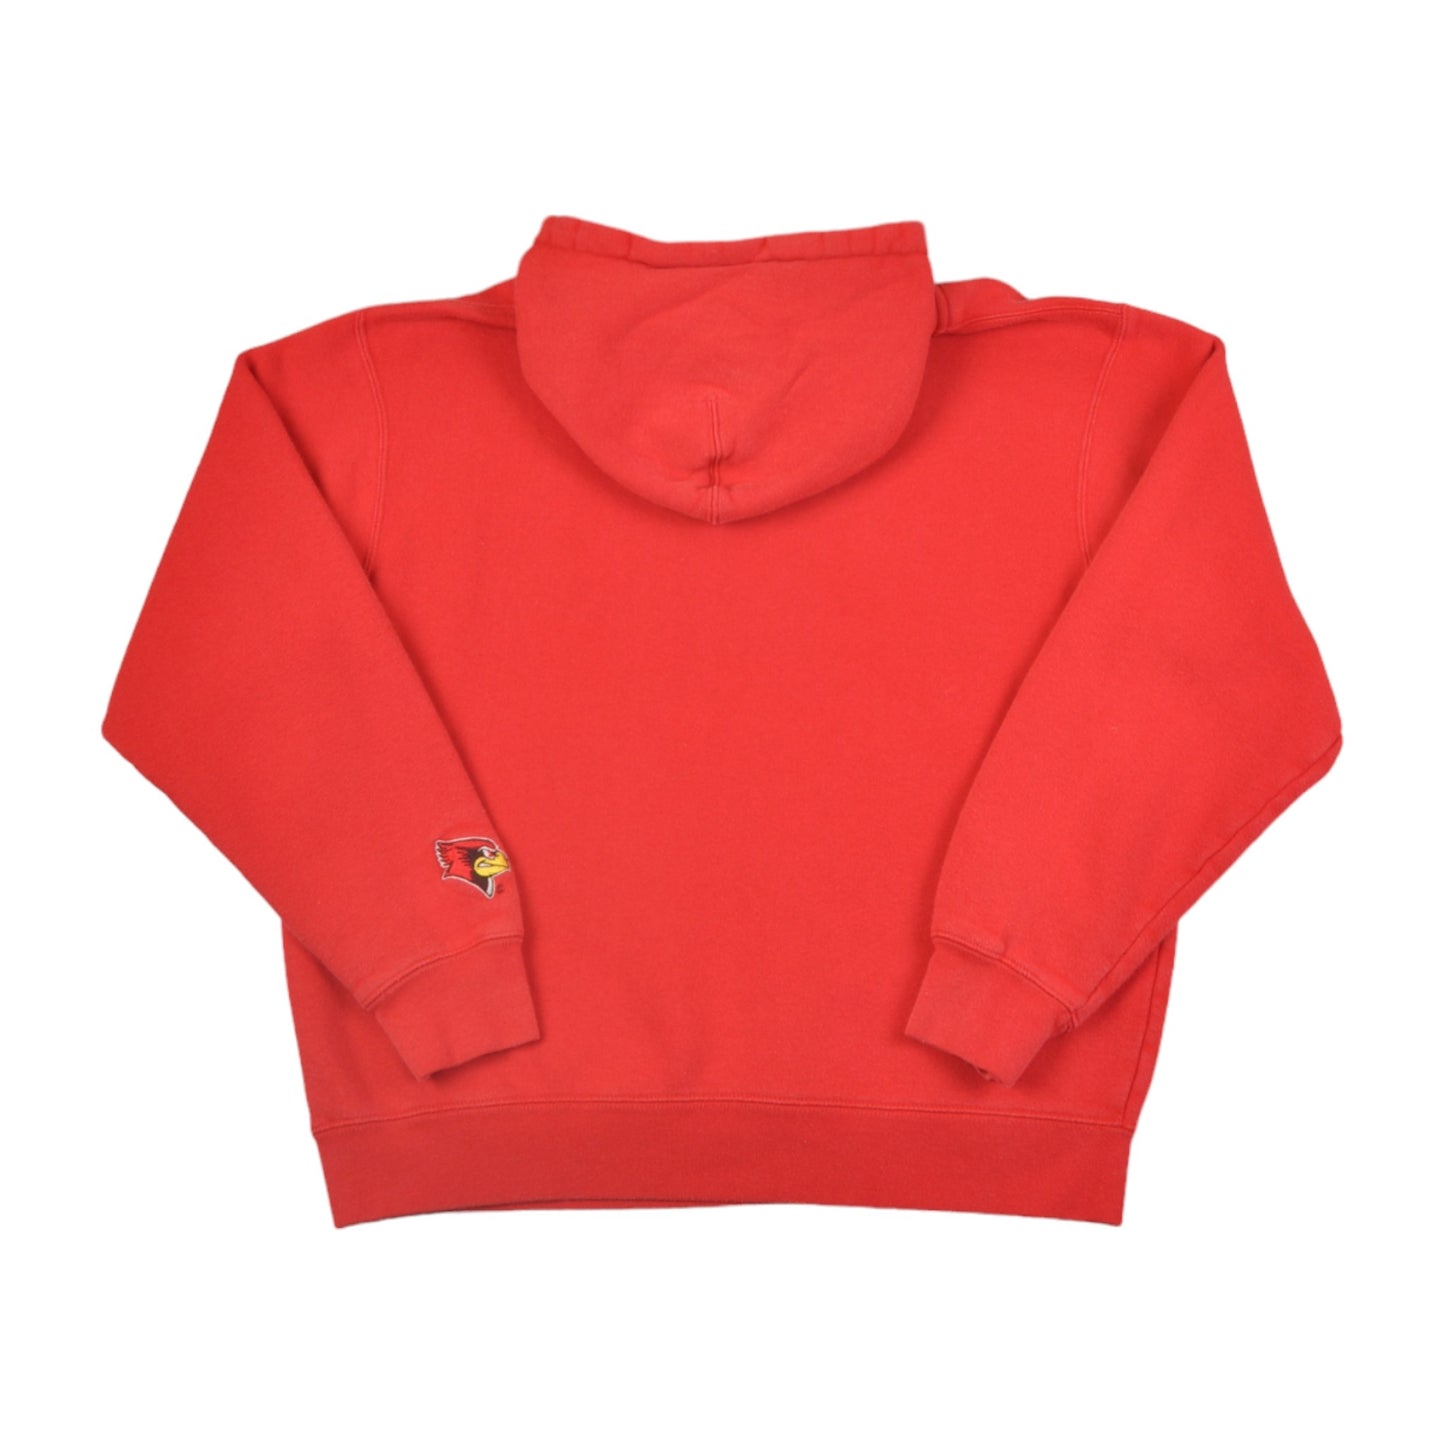 Vintage Illinois State Ravens Hoodie Sweatshirt Red Small